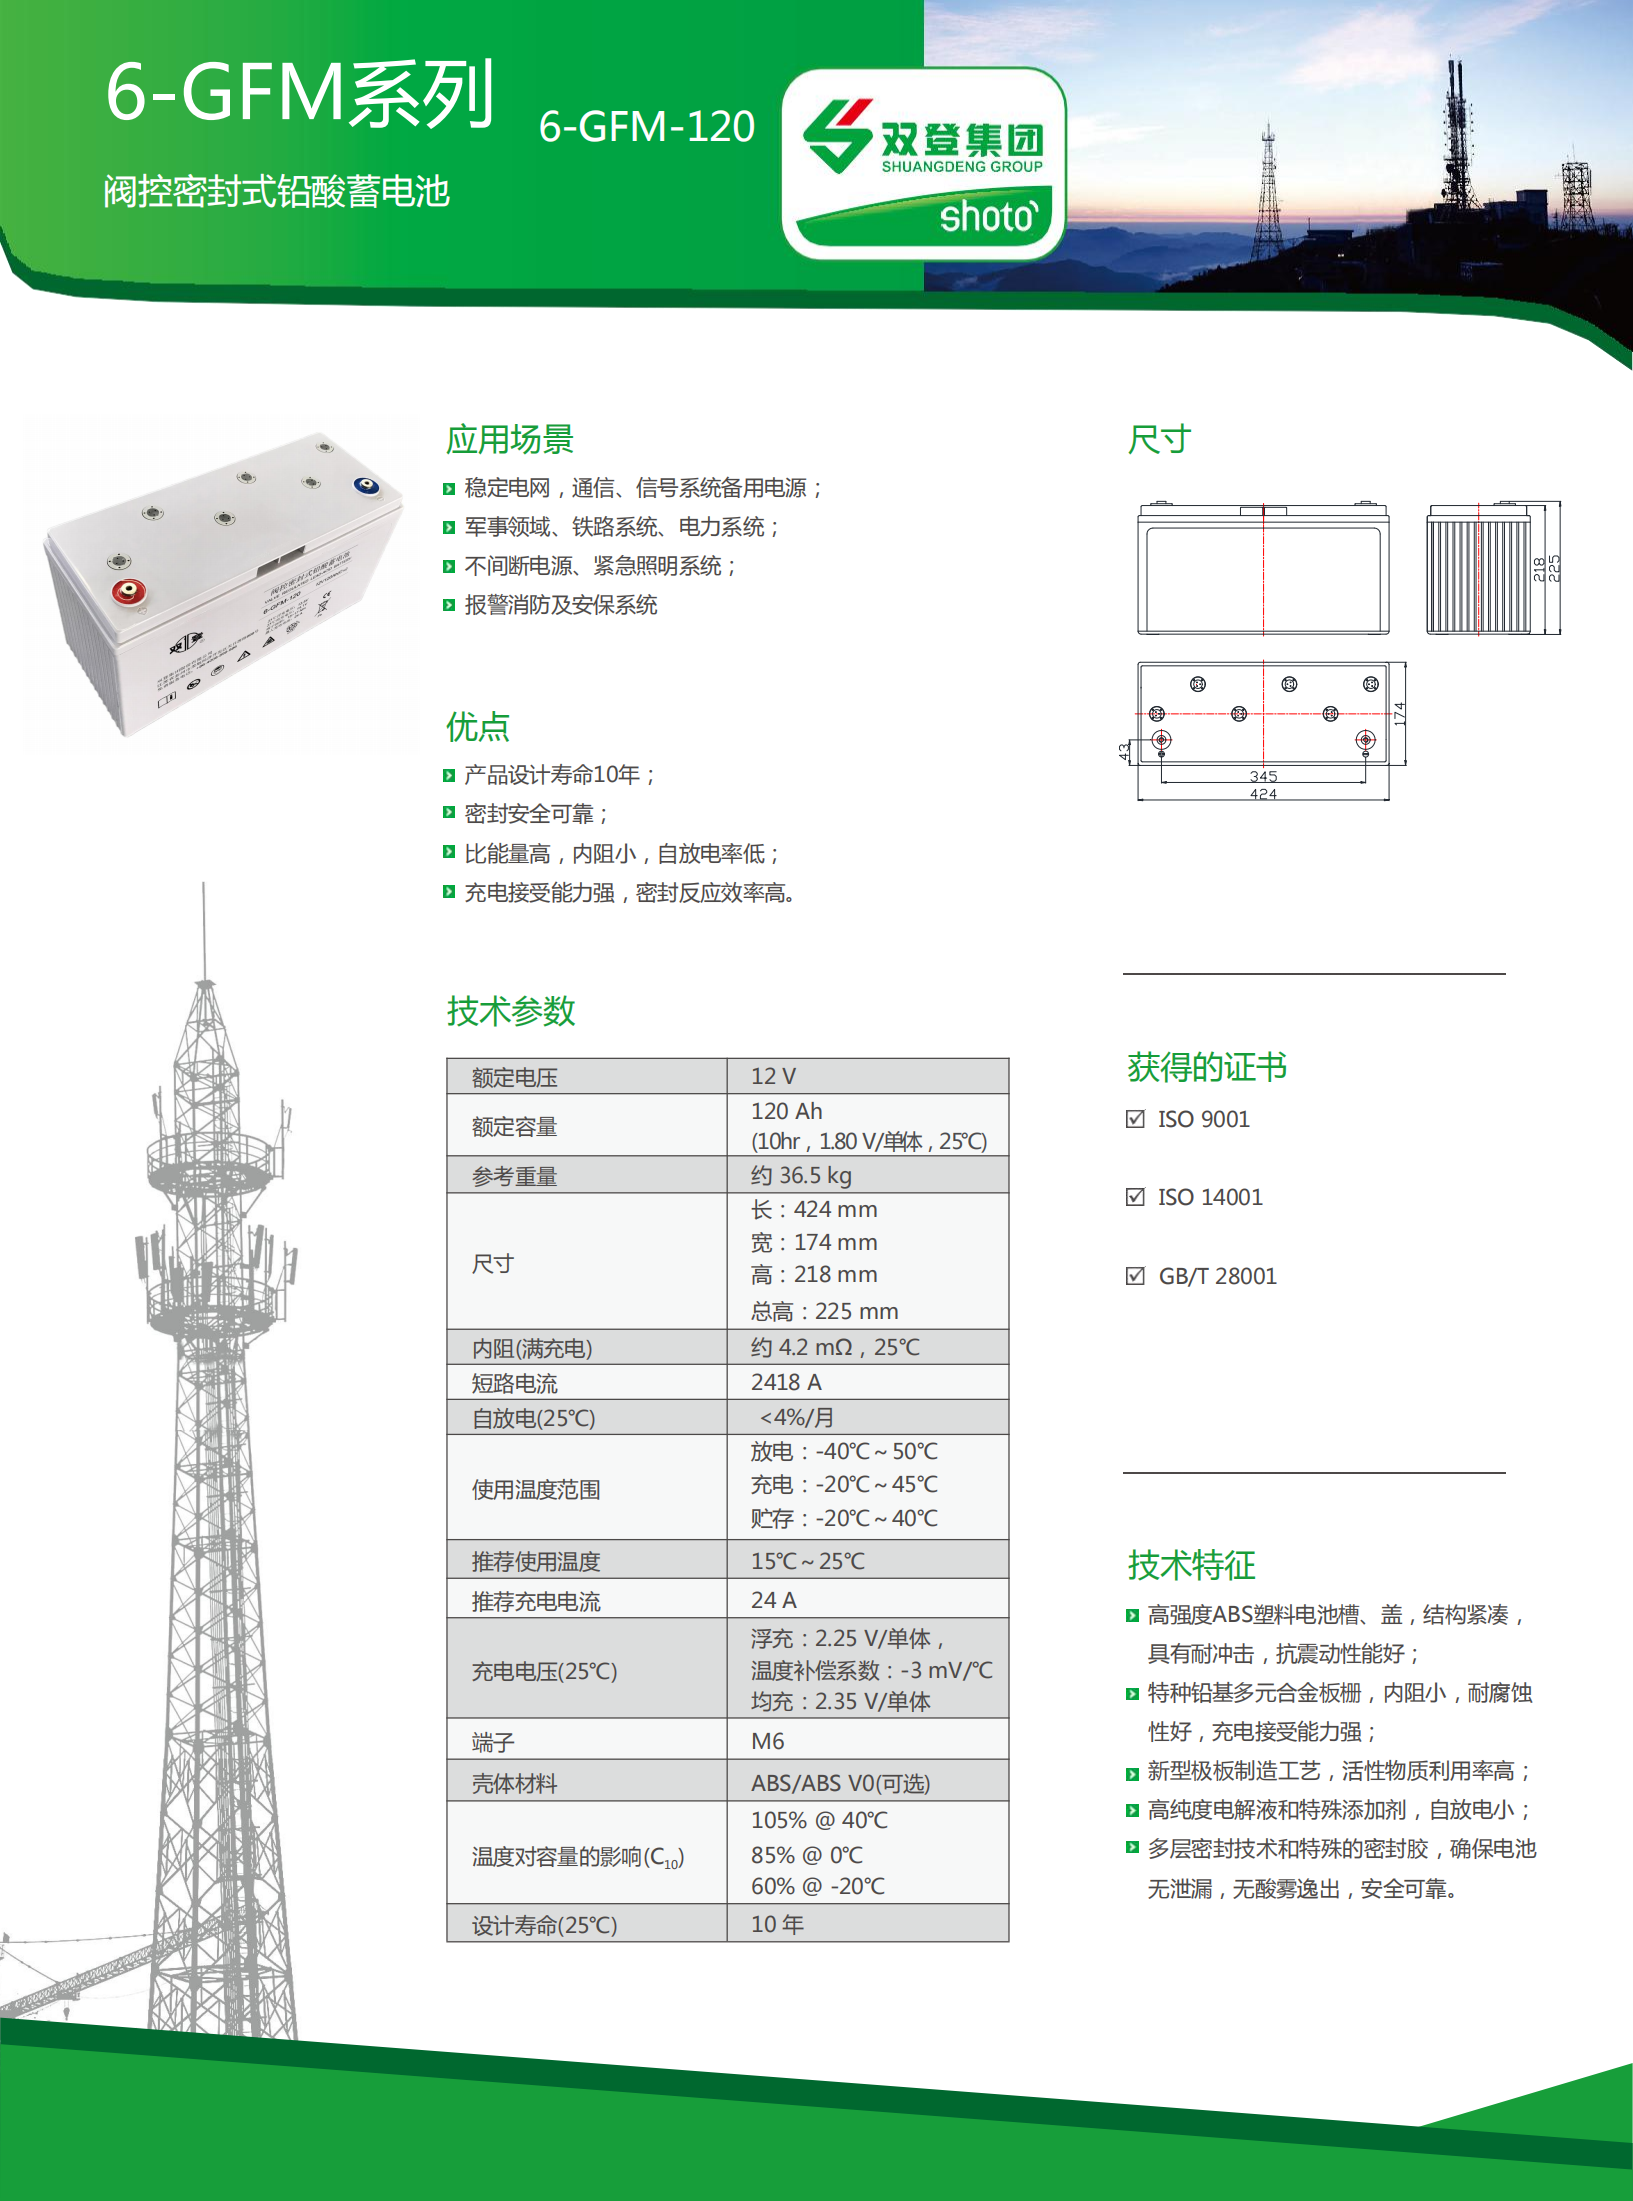 6-GFM-120(中文版)_00.png